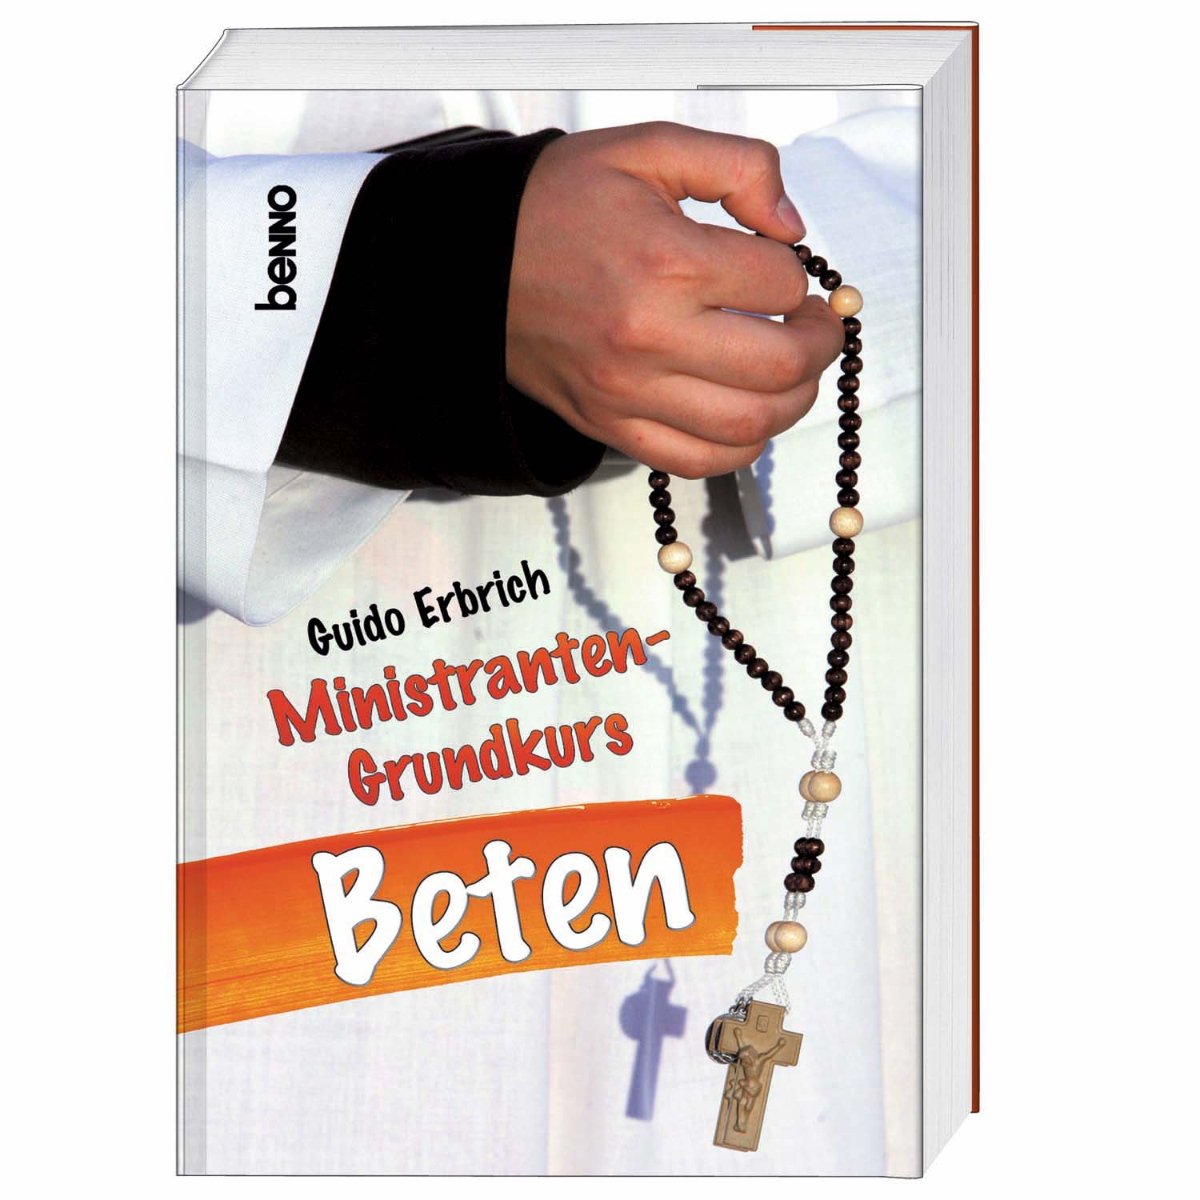 Ministranten-Grundkurs Beten (c) Vivat / St. Benno Verlag